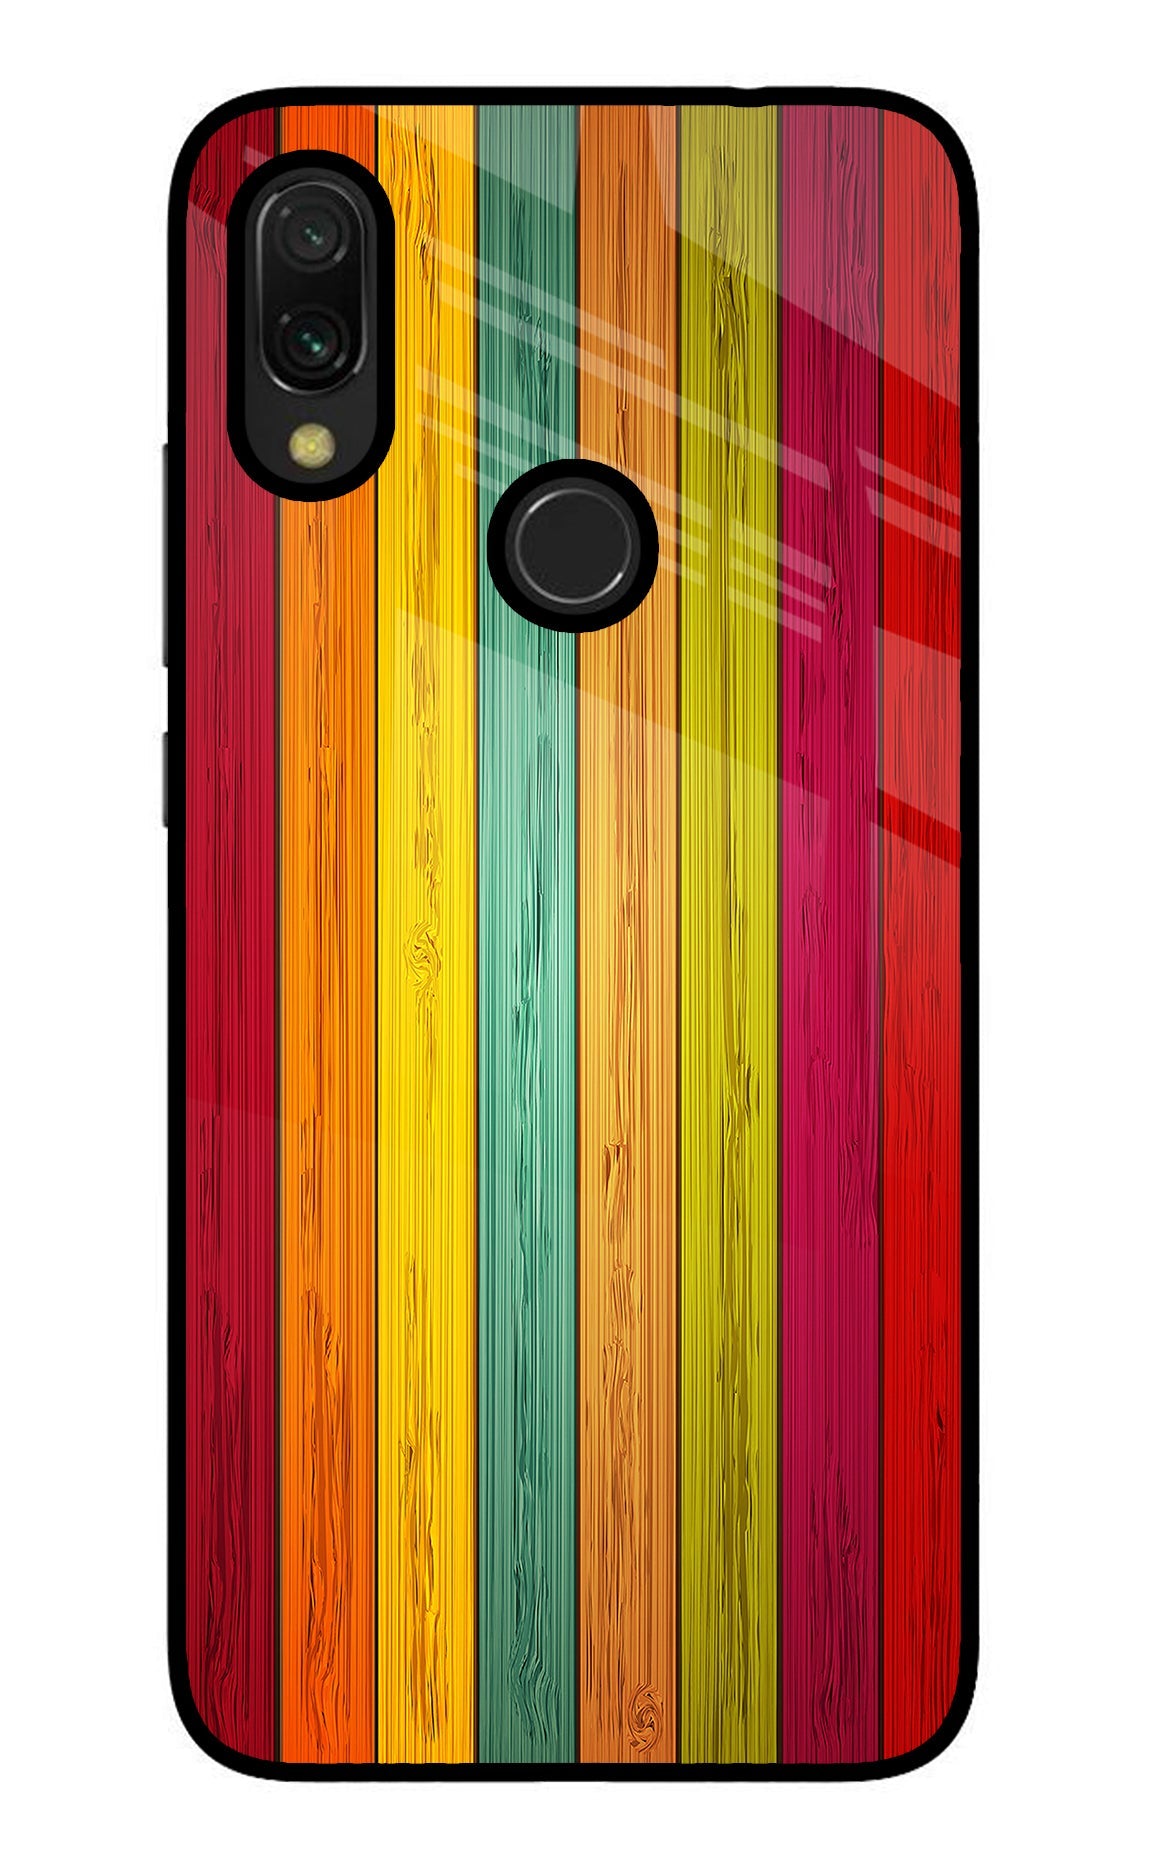 Multicolor Wooden Redmi Y3 Glass Case